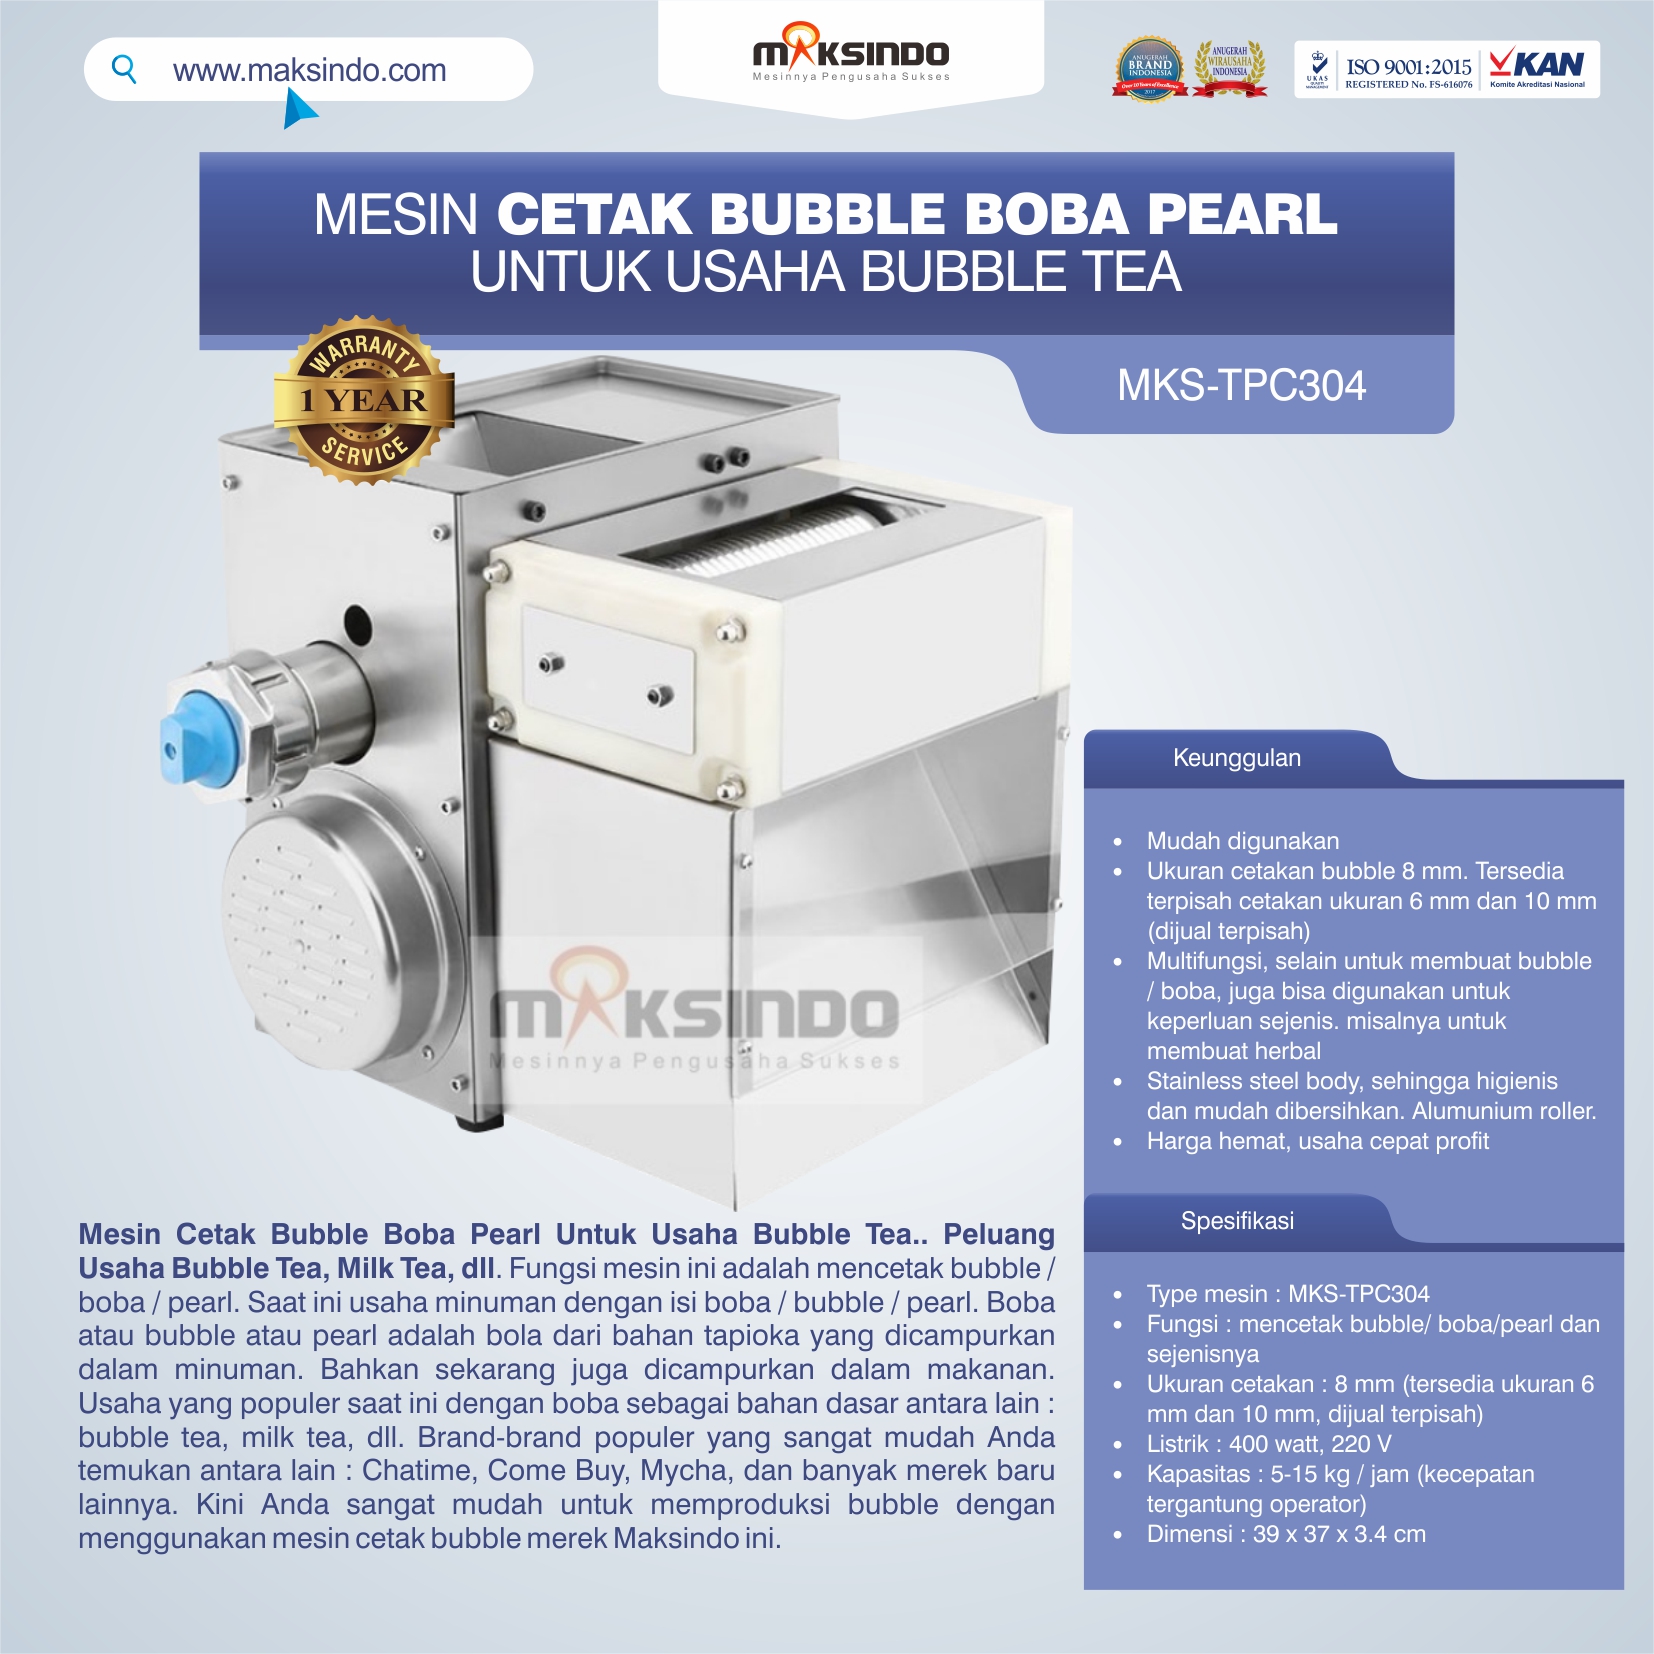 Jual Mesin Cetak Bubble Boba Pearl Untuk Usaha Bubble Tea di Makassar